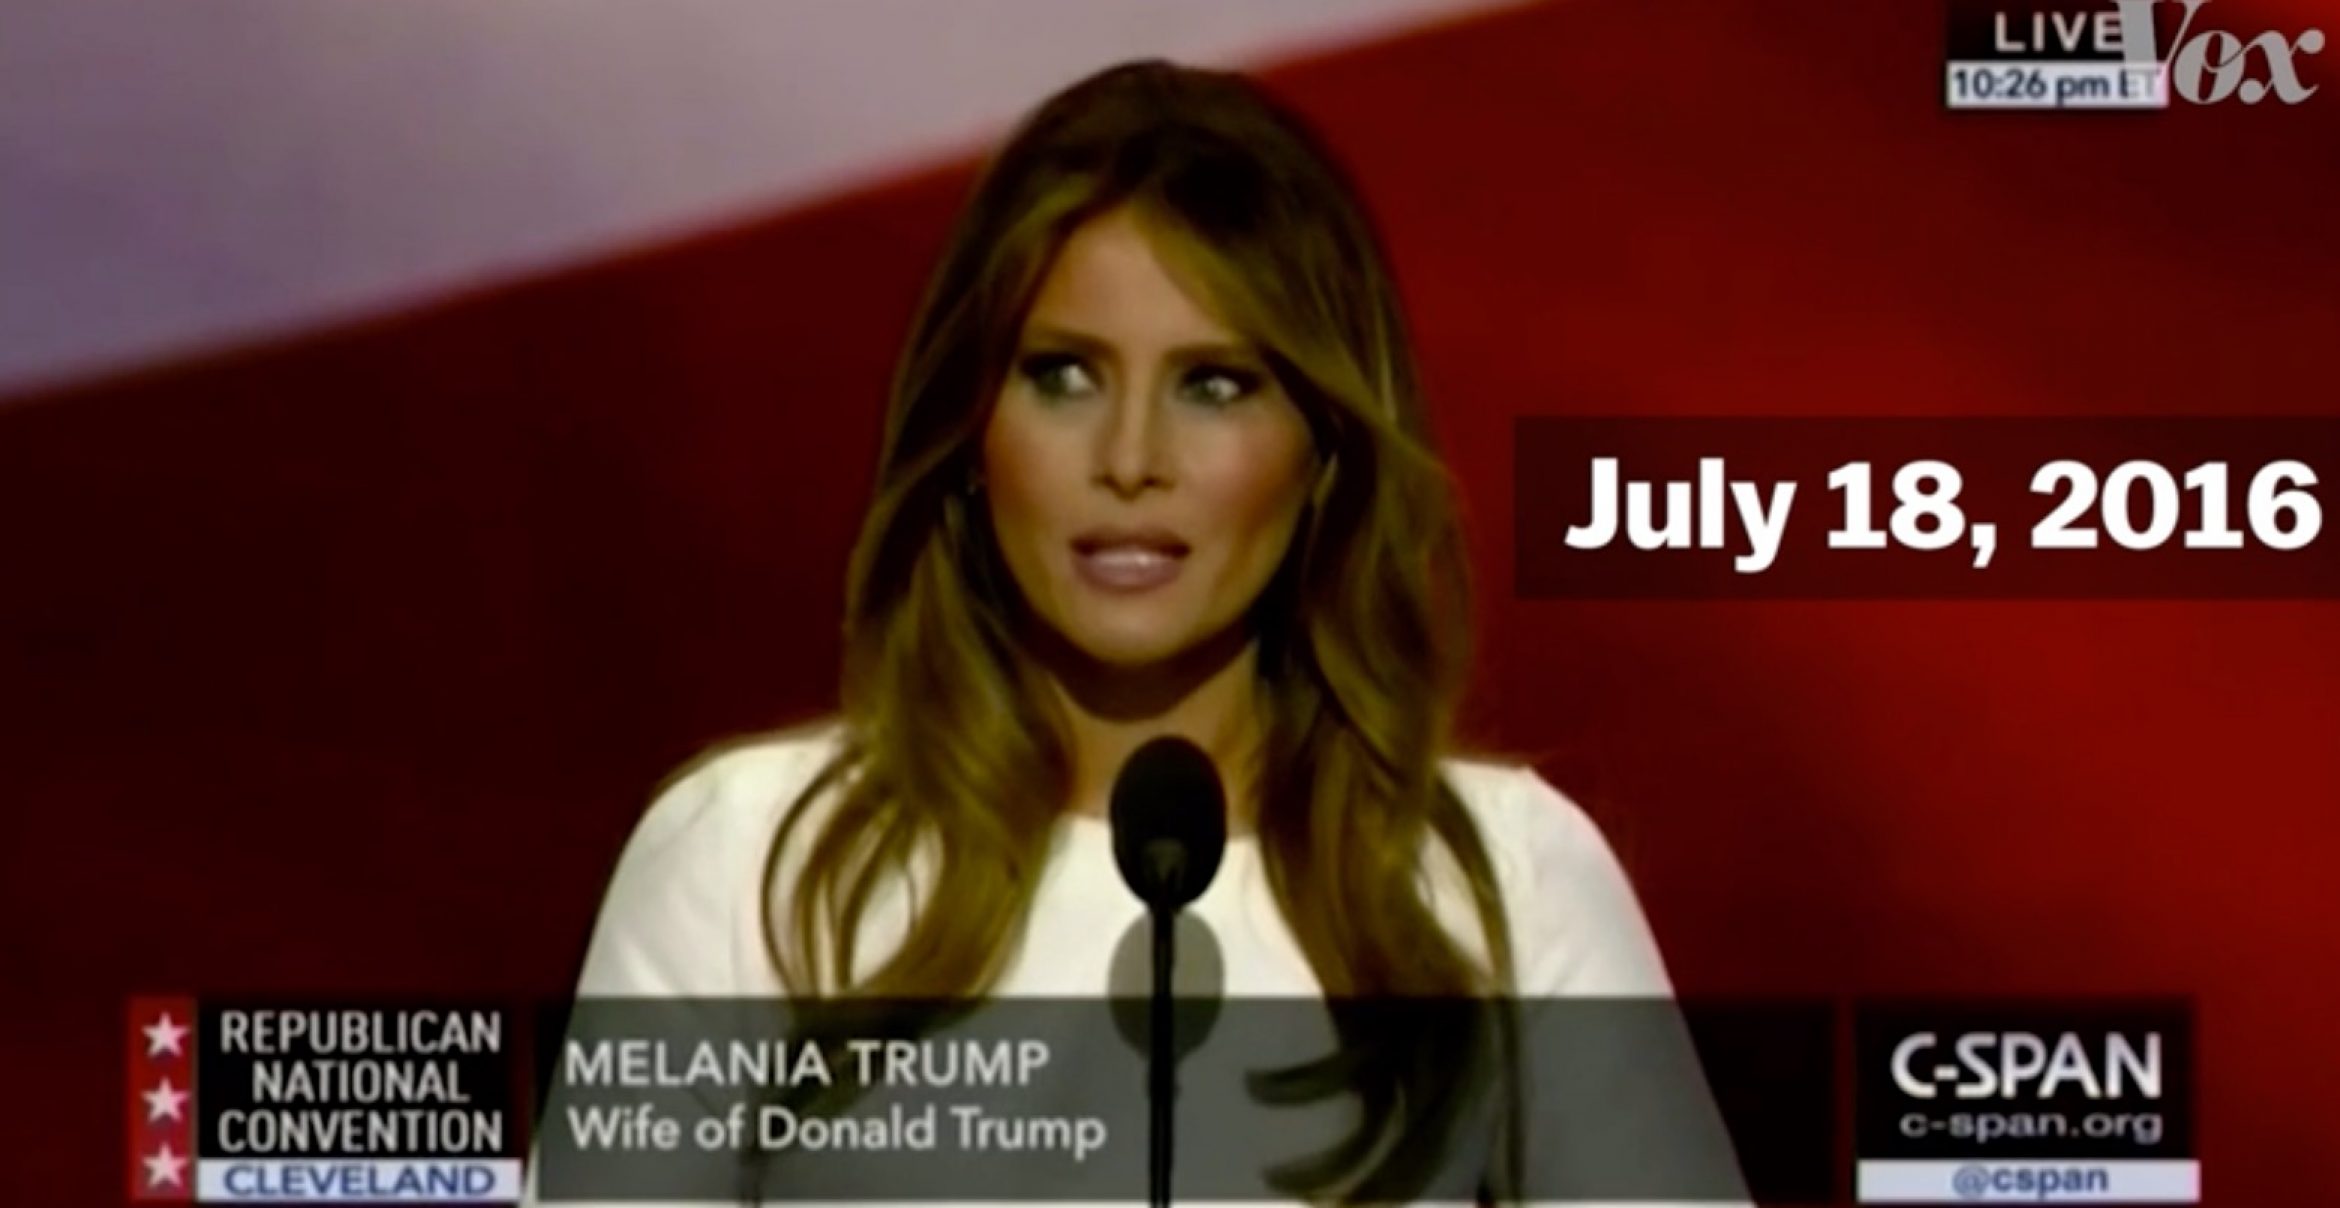 Eklat: Melania Trump kopiert Rede von Michelle Obama